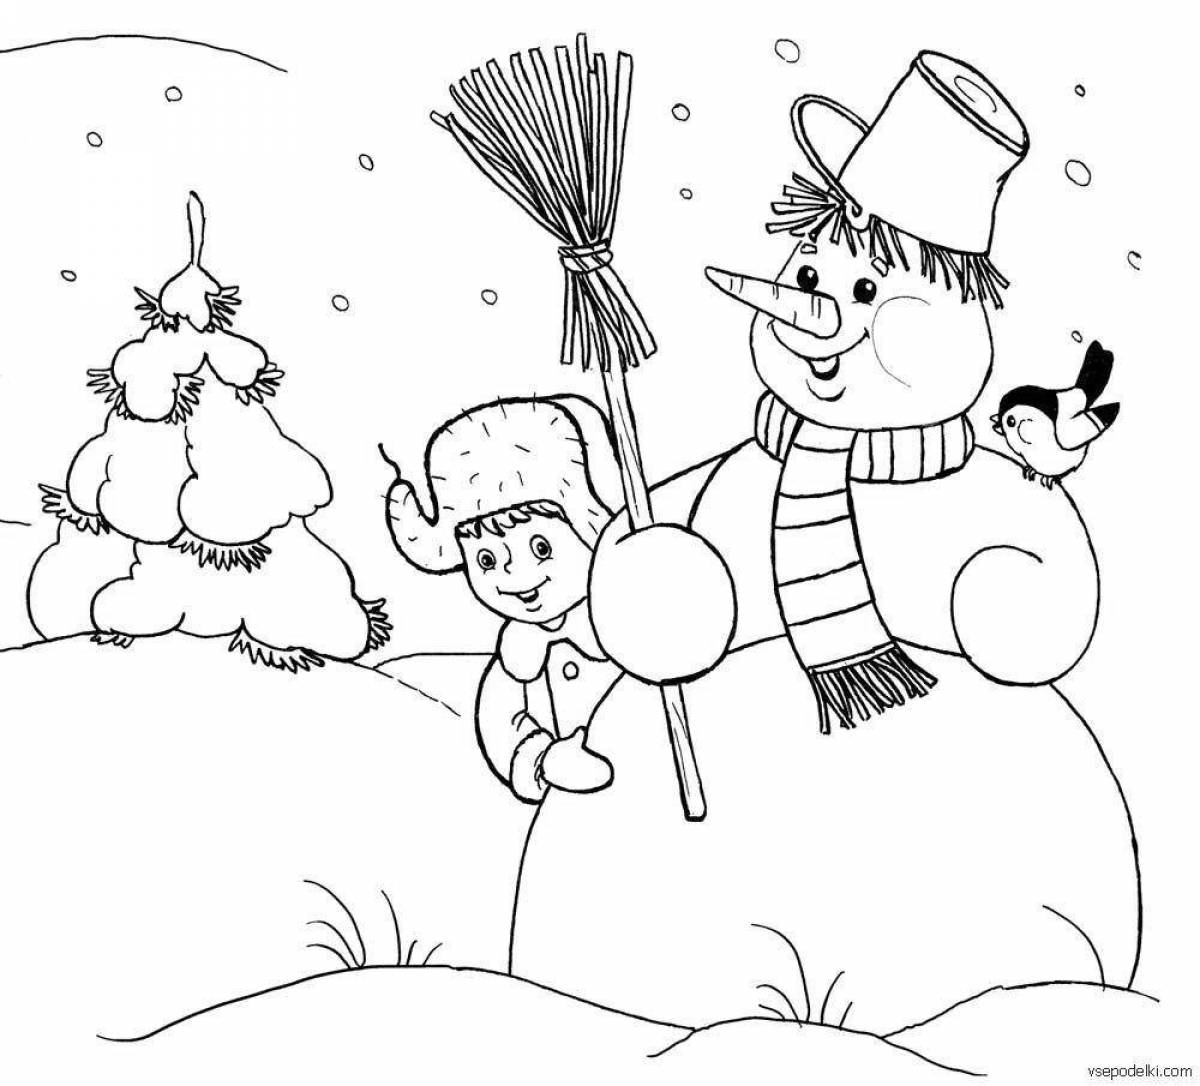 Светящаяся раскраска снеговик для детей 3 4